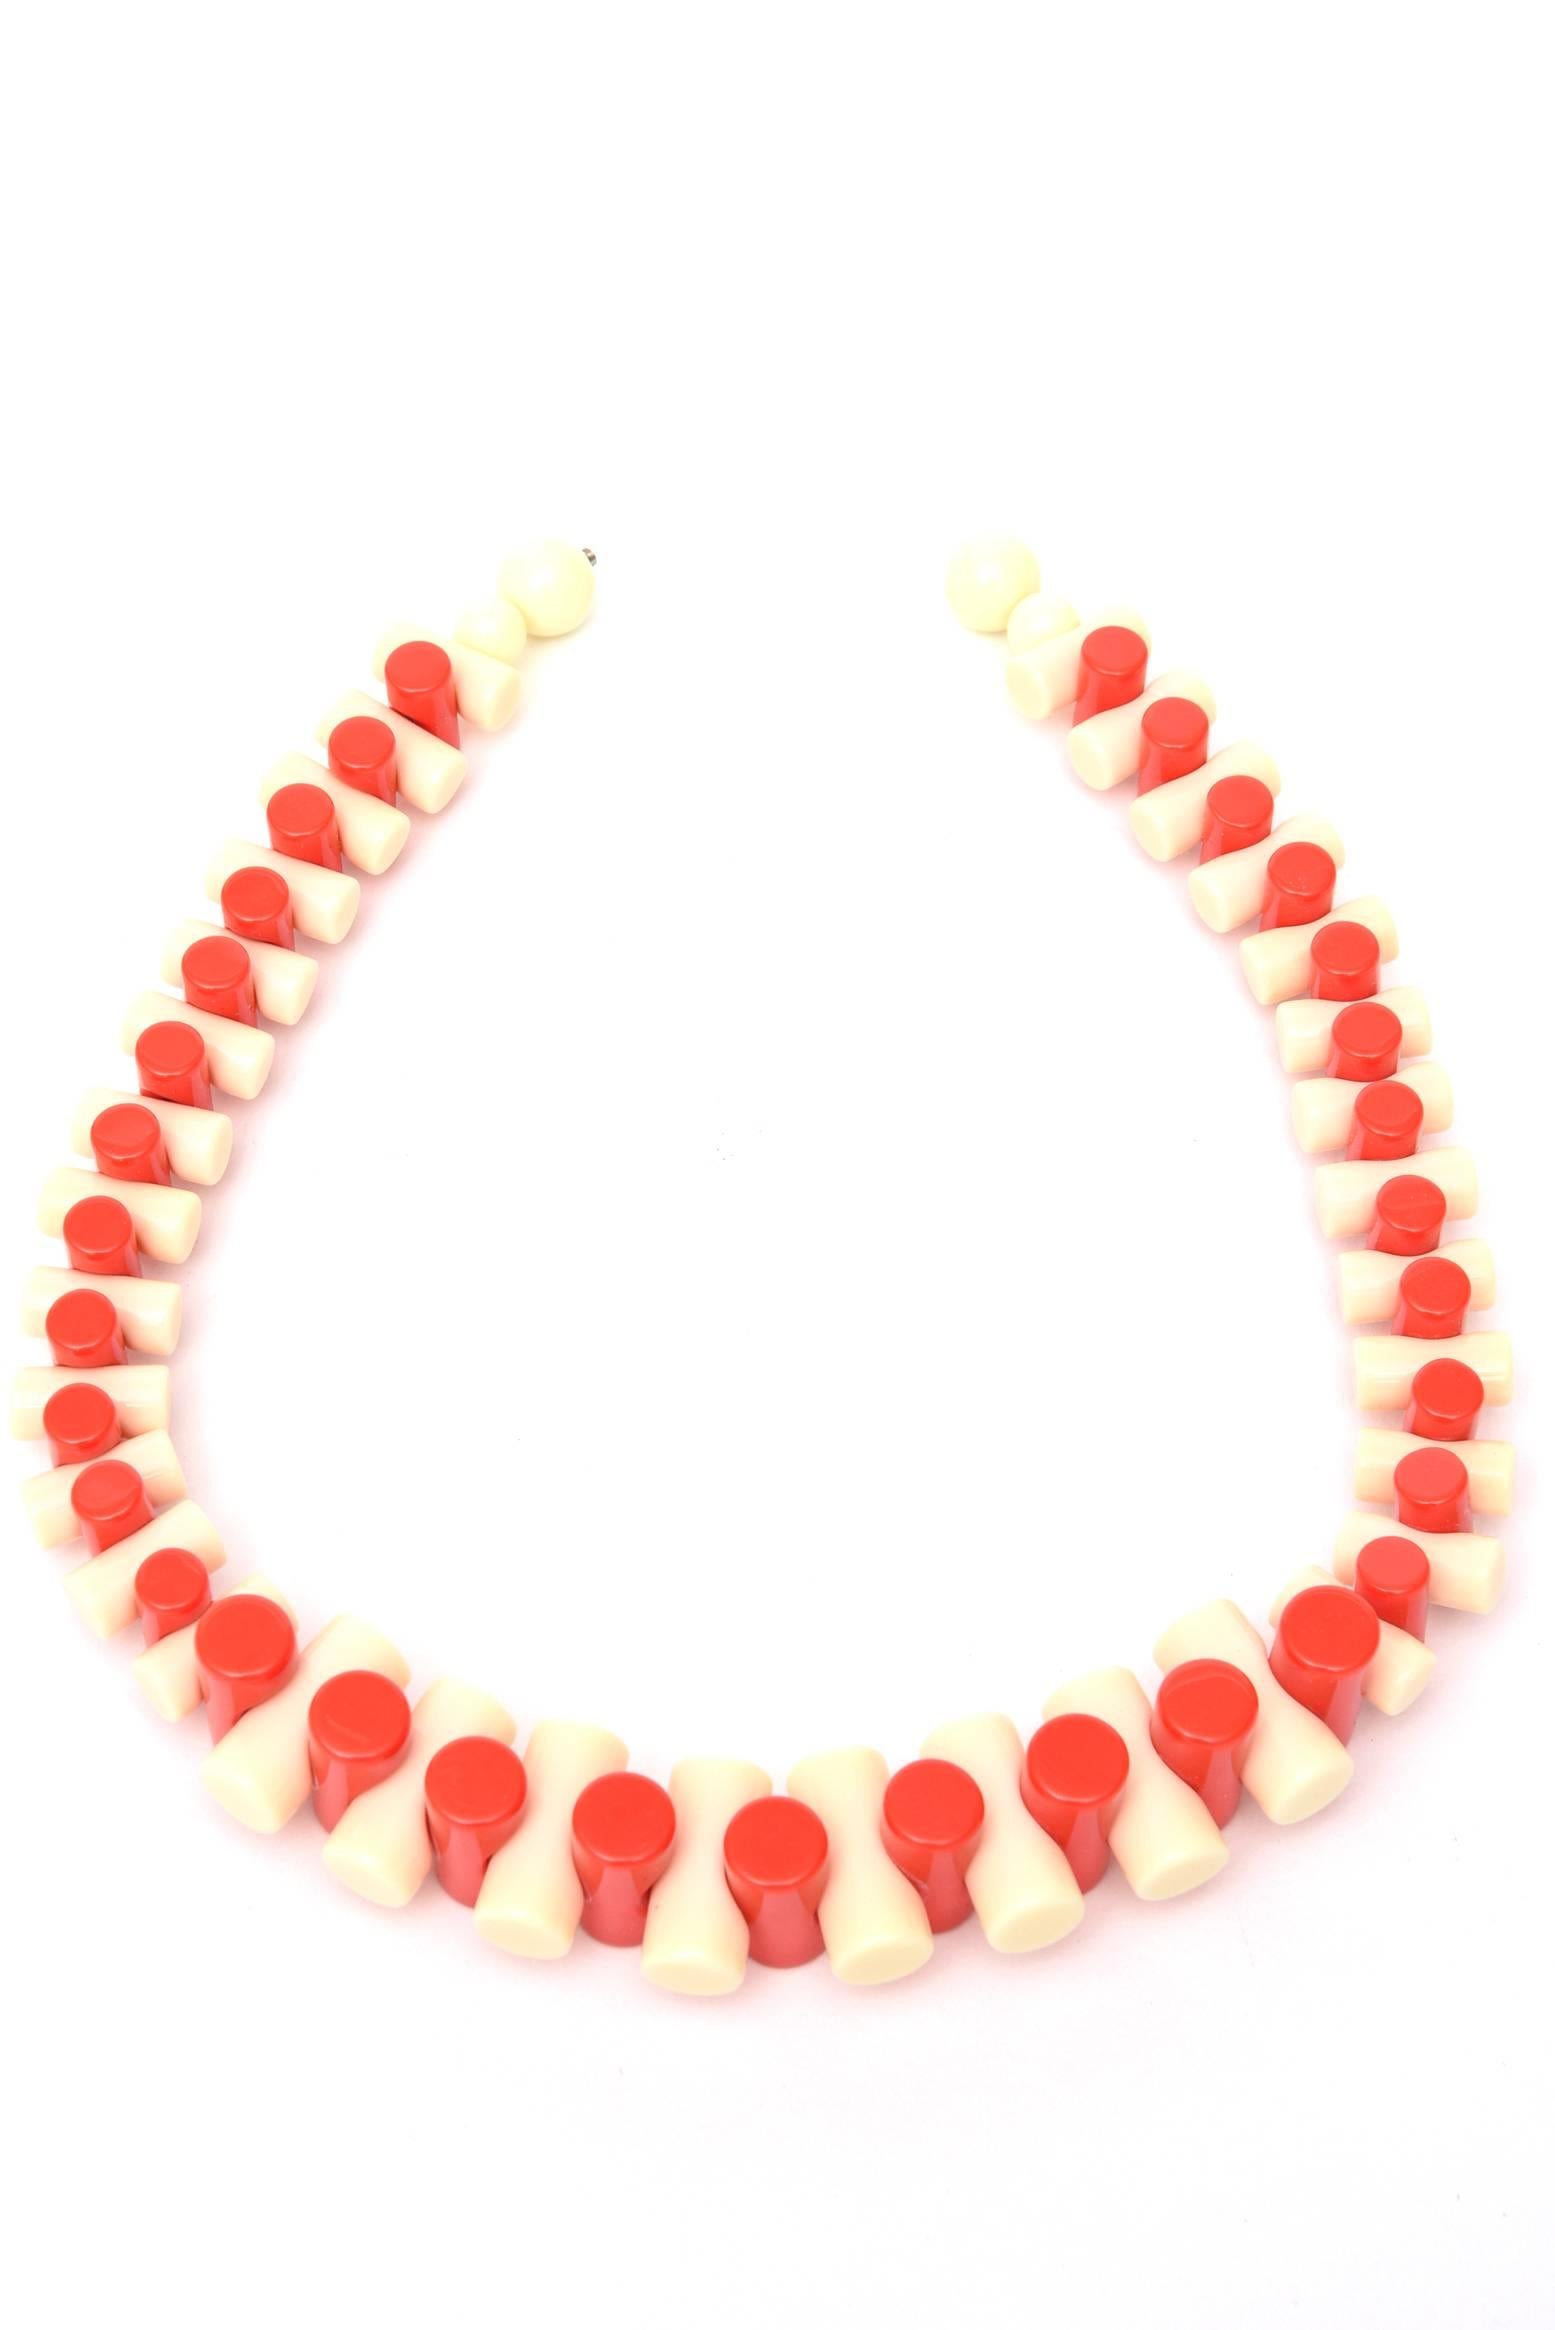 Abwechselnd orange und cremefarbenes Harz bilden diese skulpturale Halskette, die ein Statement setzt. Er graduiert in der Größe des röhrenförmig geformten Harzes. Es ist französisch und stammt aus den 90er Jahren. Perfekt für Freizeitkleidung und 